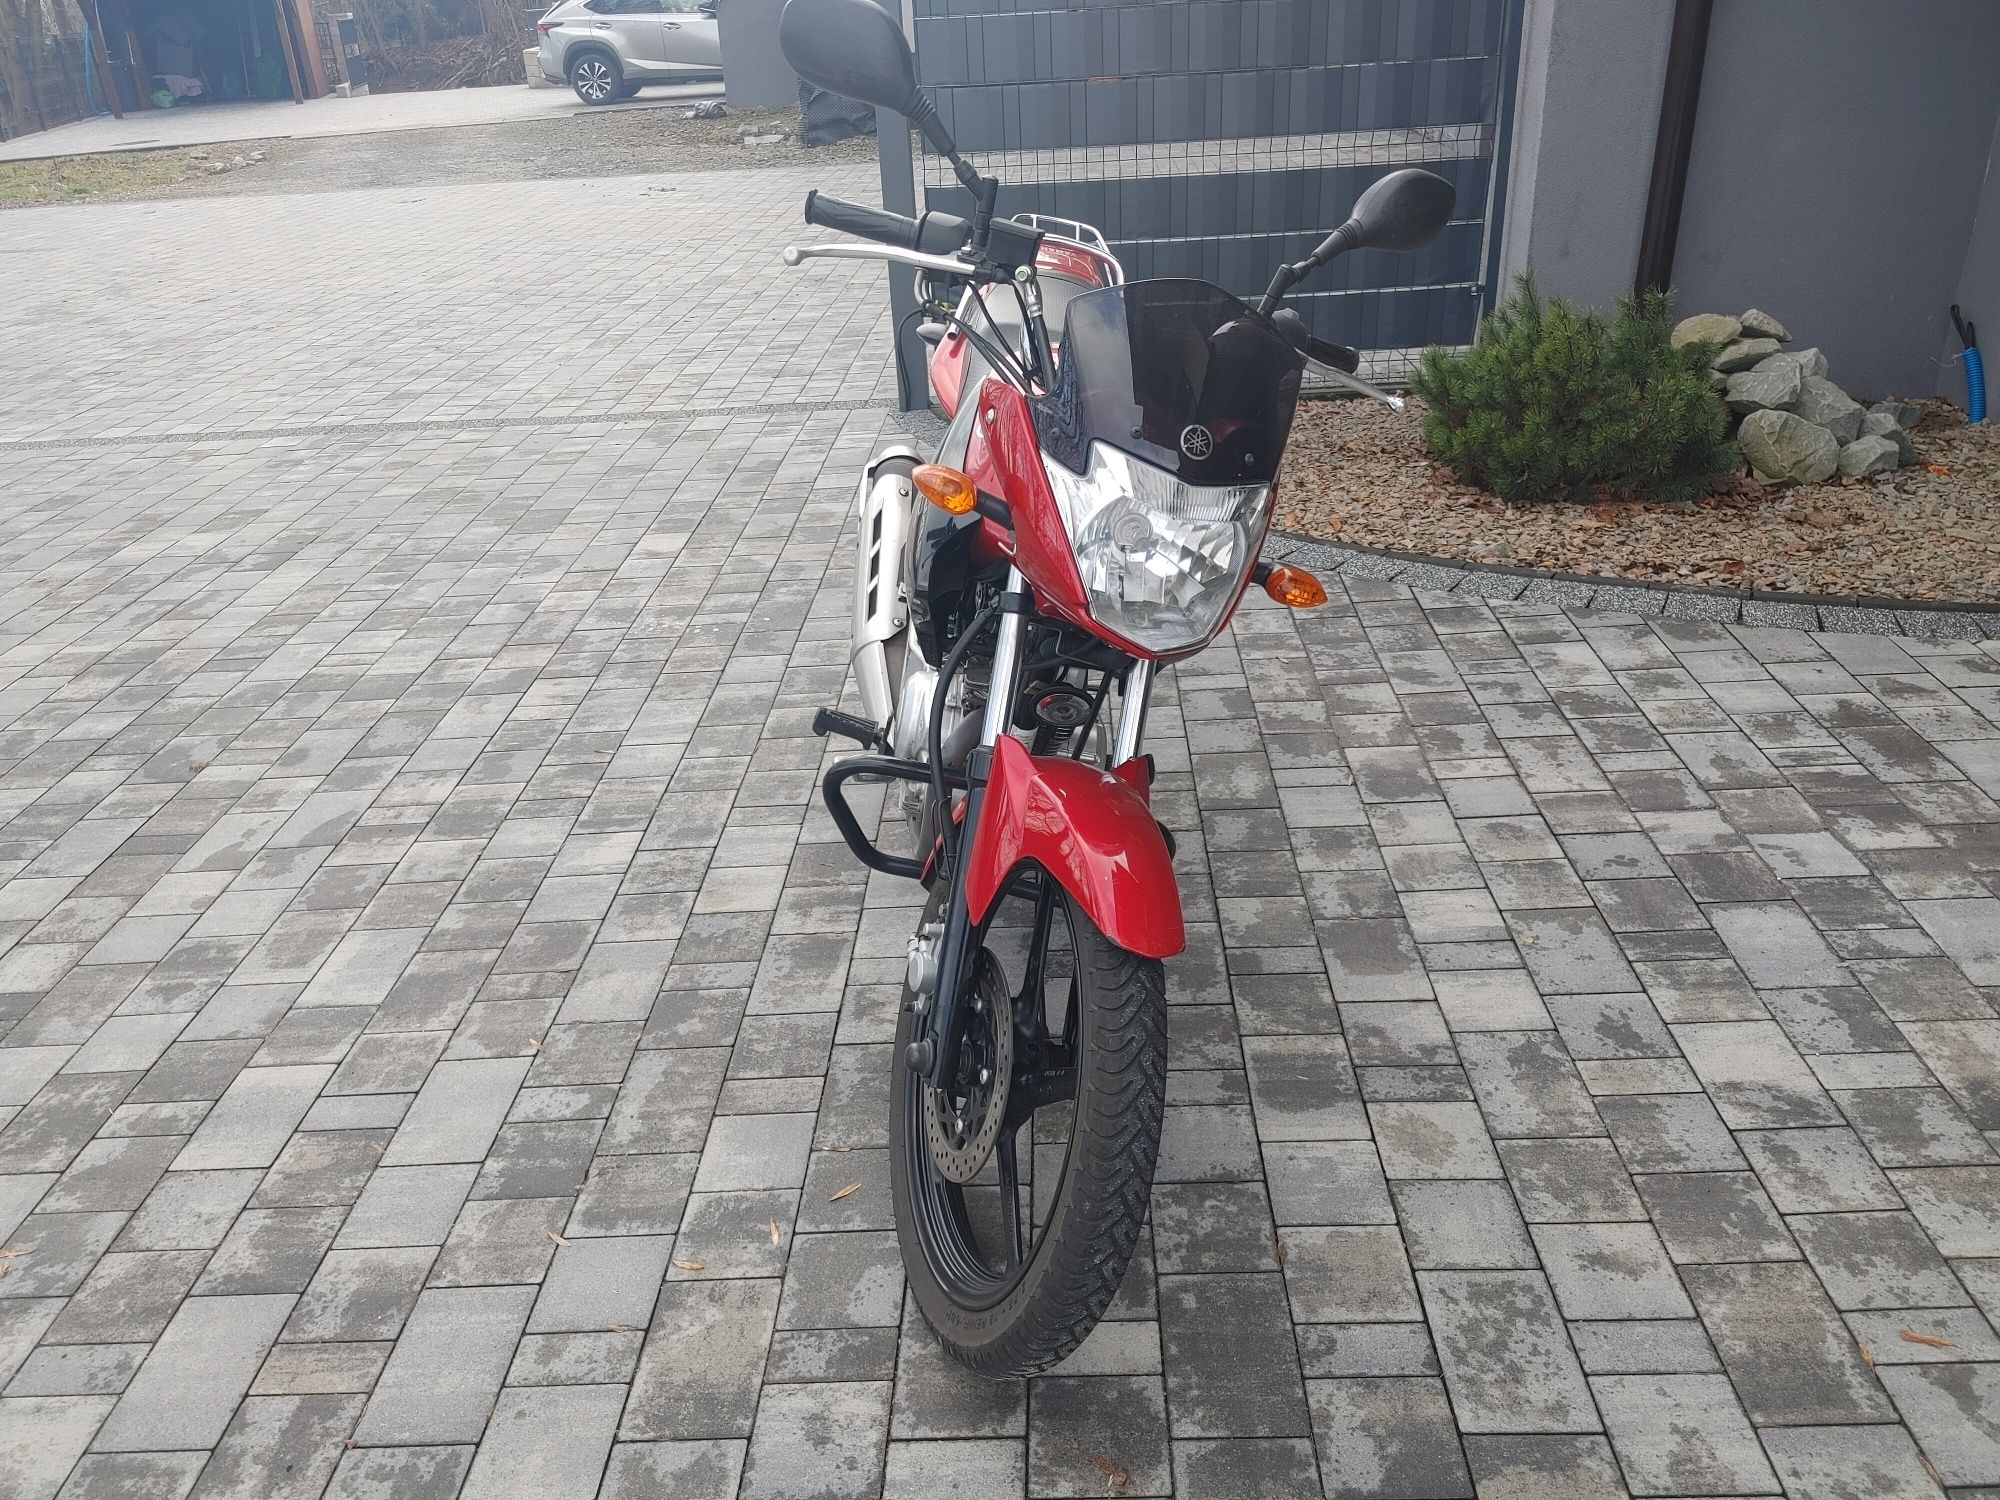 Motocykl czerwona Yamaha YBR 125